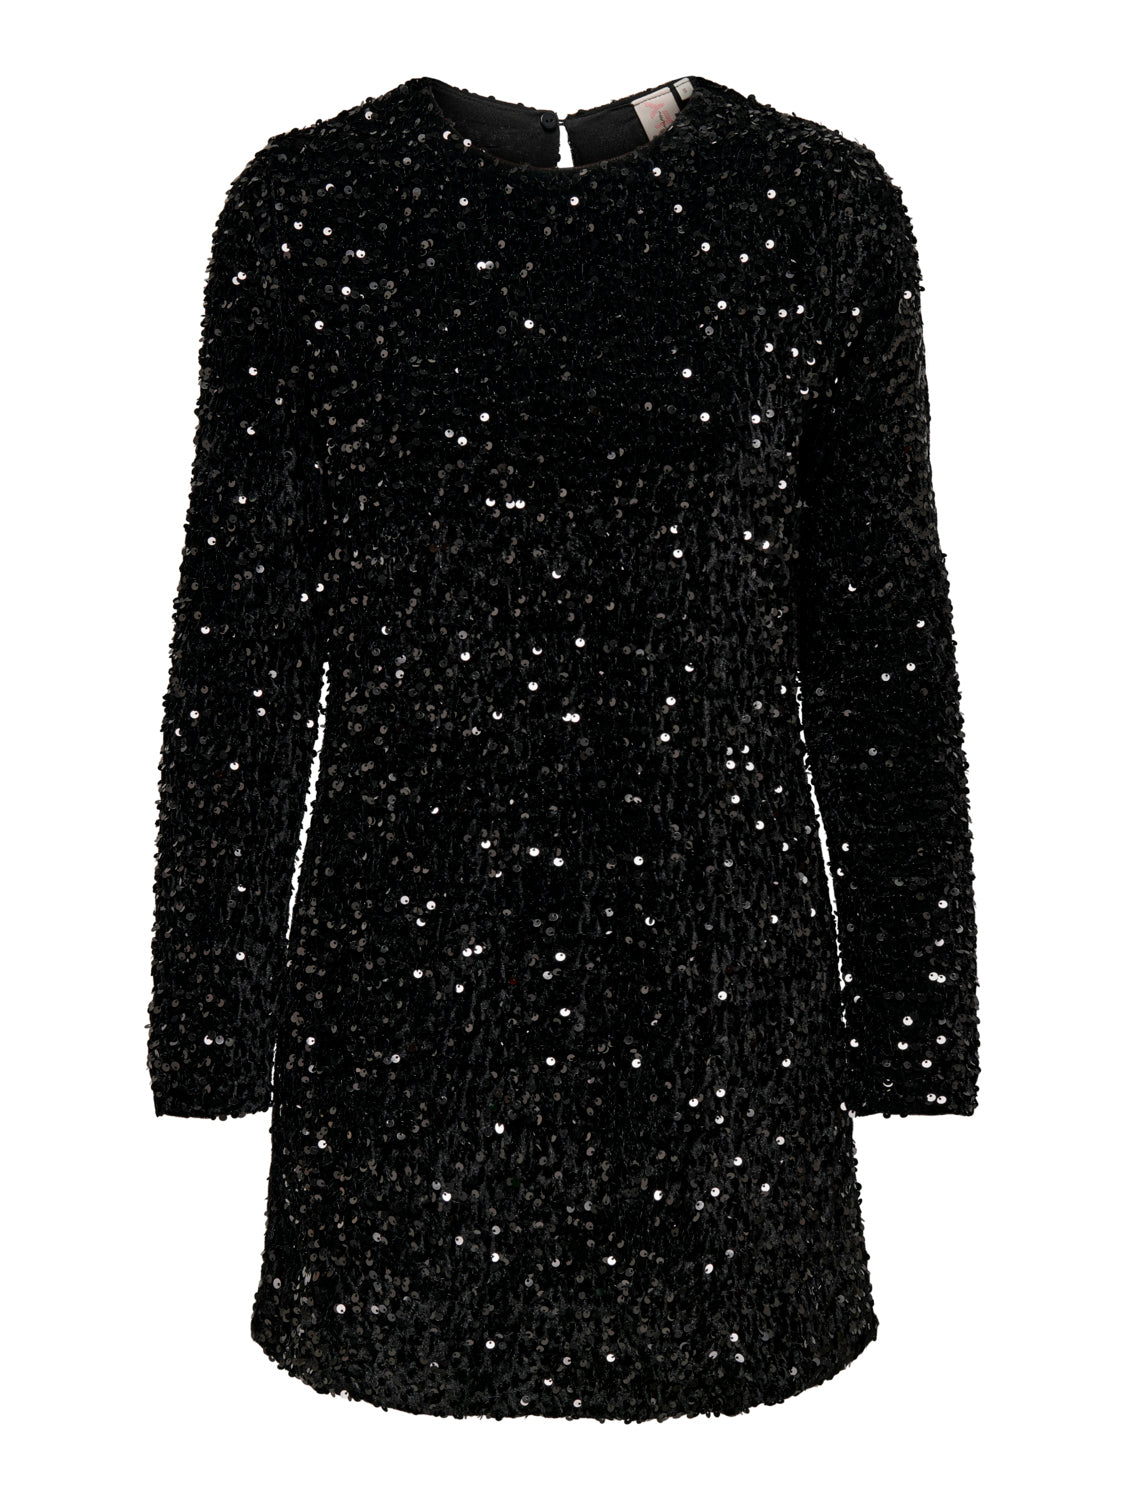 ONLANIKA Dress - Black